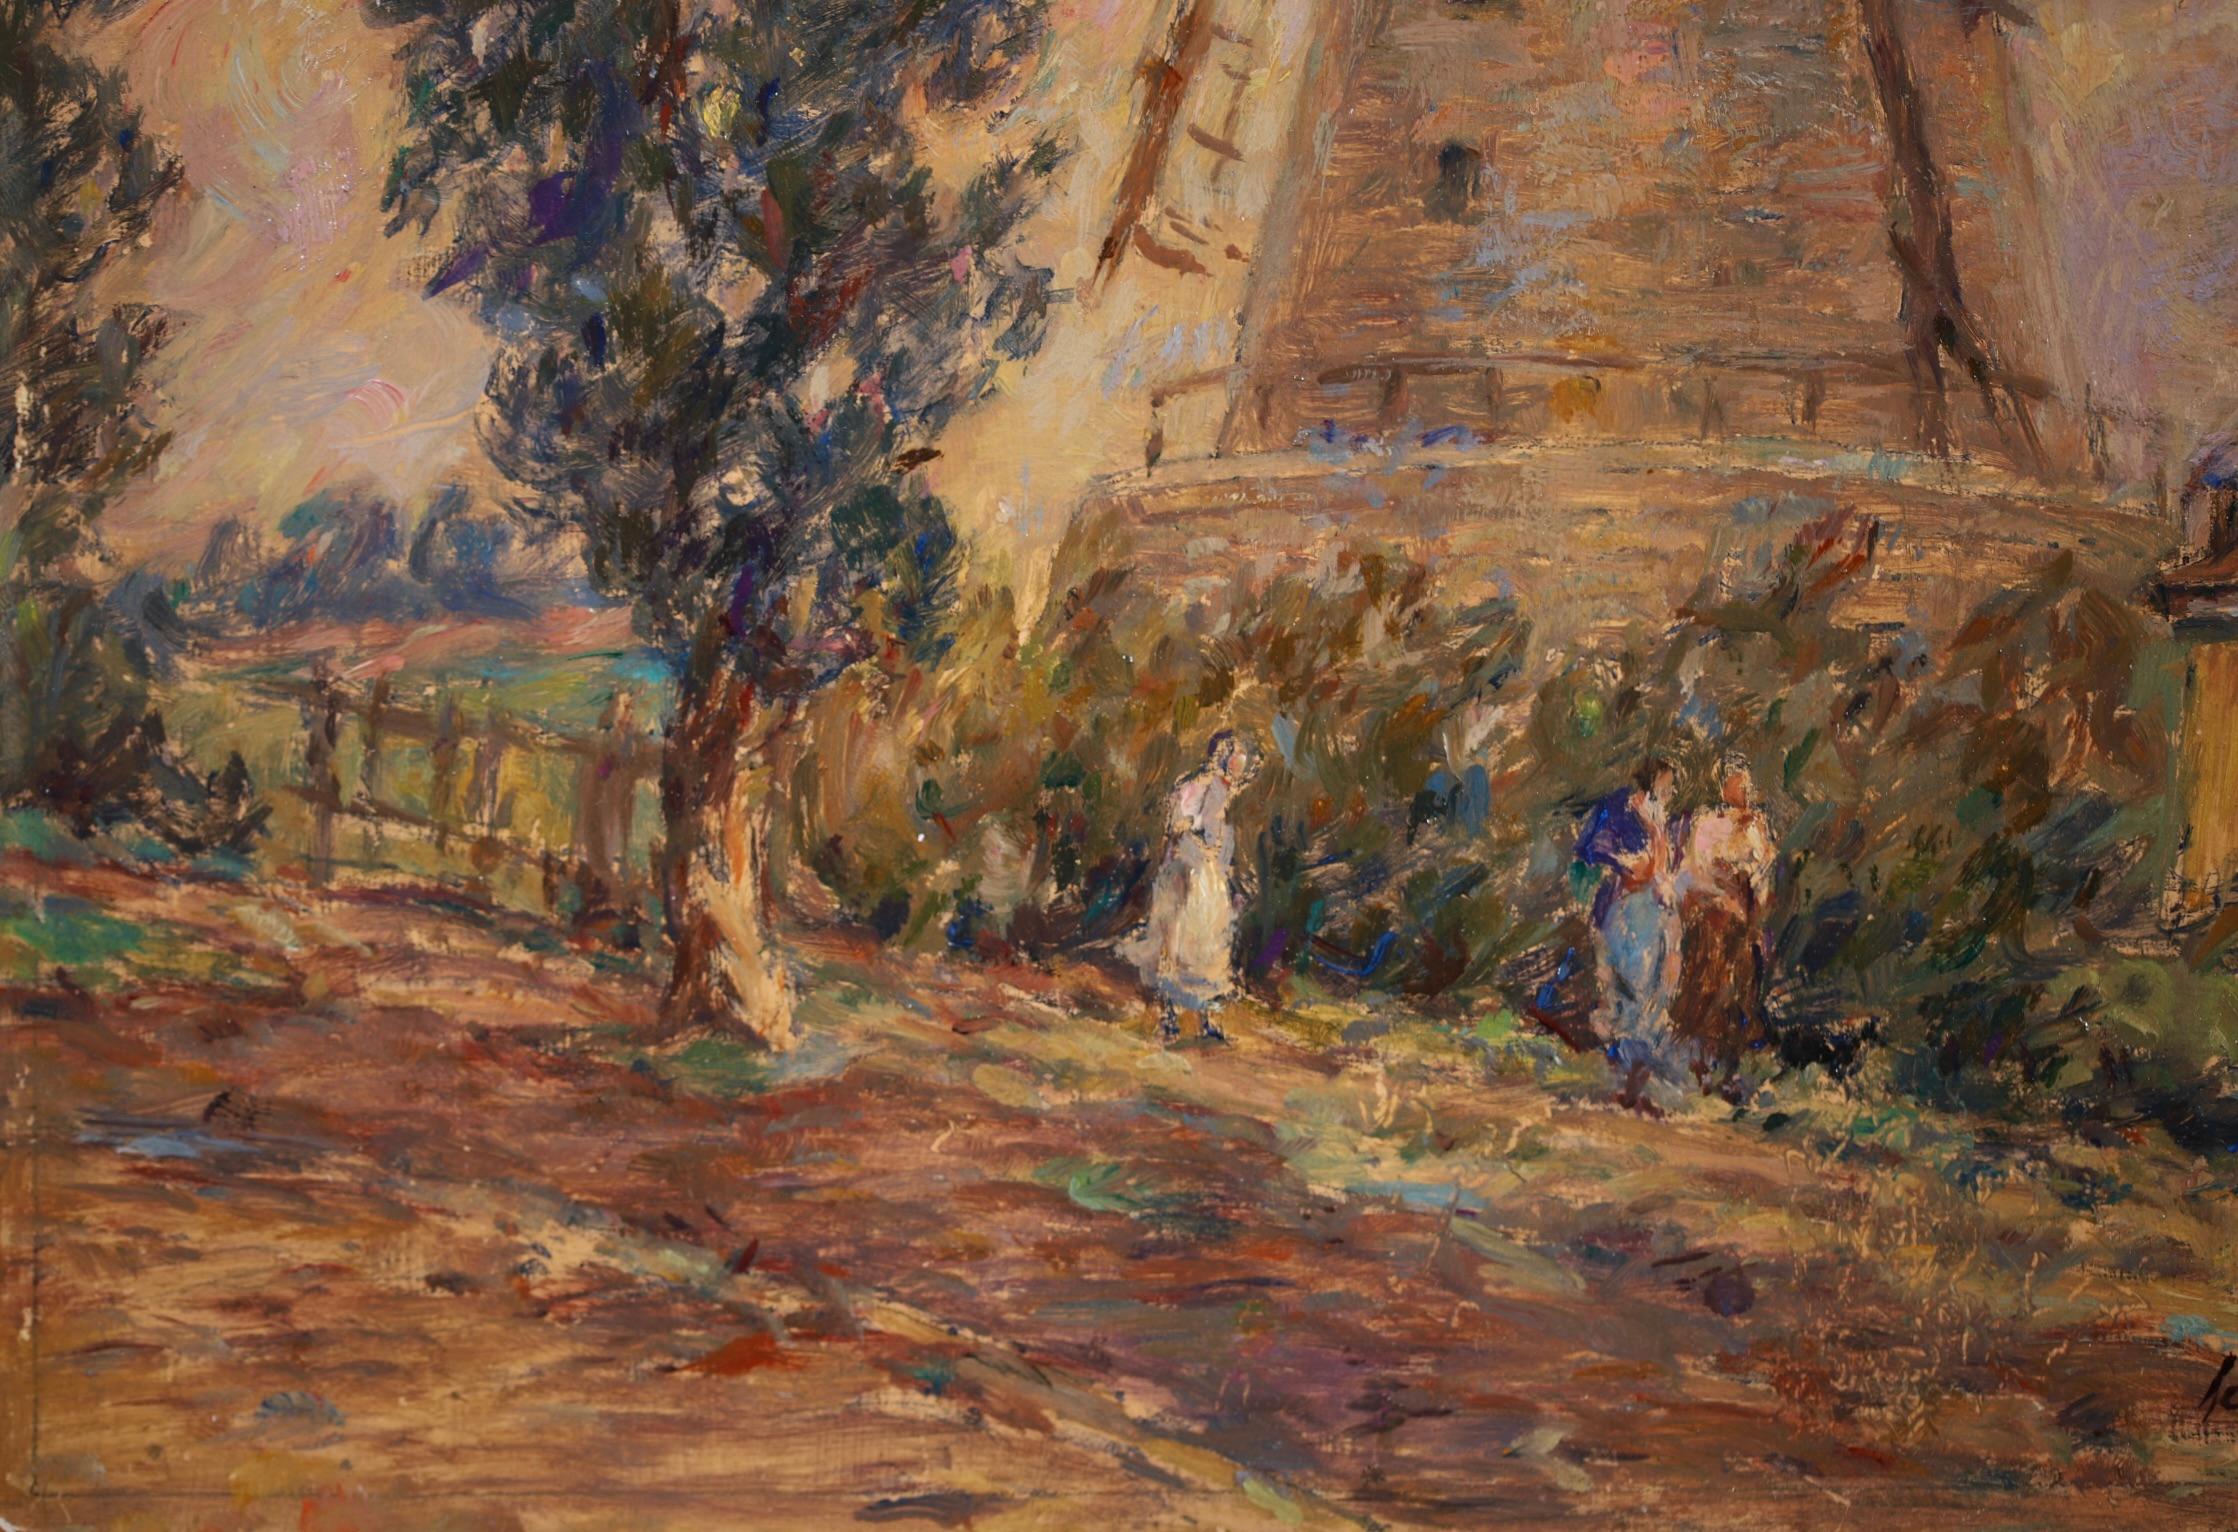 Moulin - Impressionist Oil, Windmill, Figures & Dog in Landscape by Henri Duhem 4